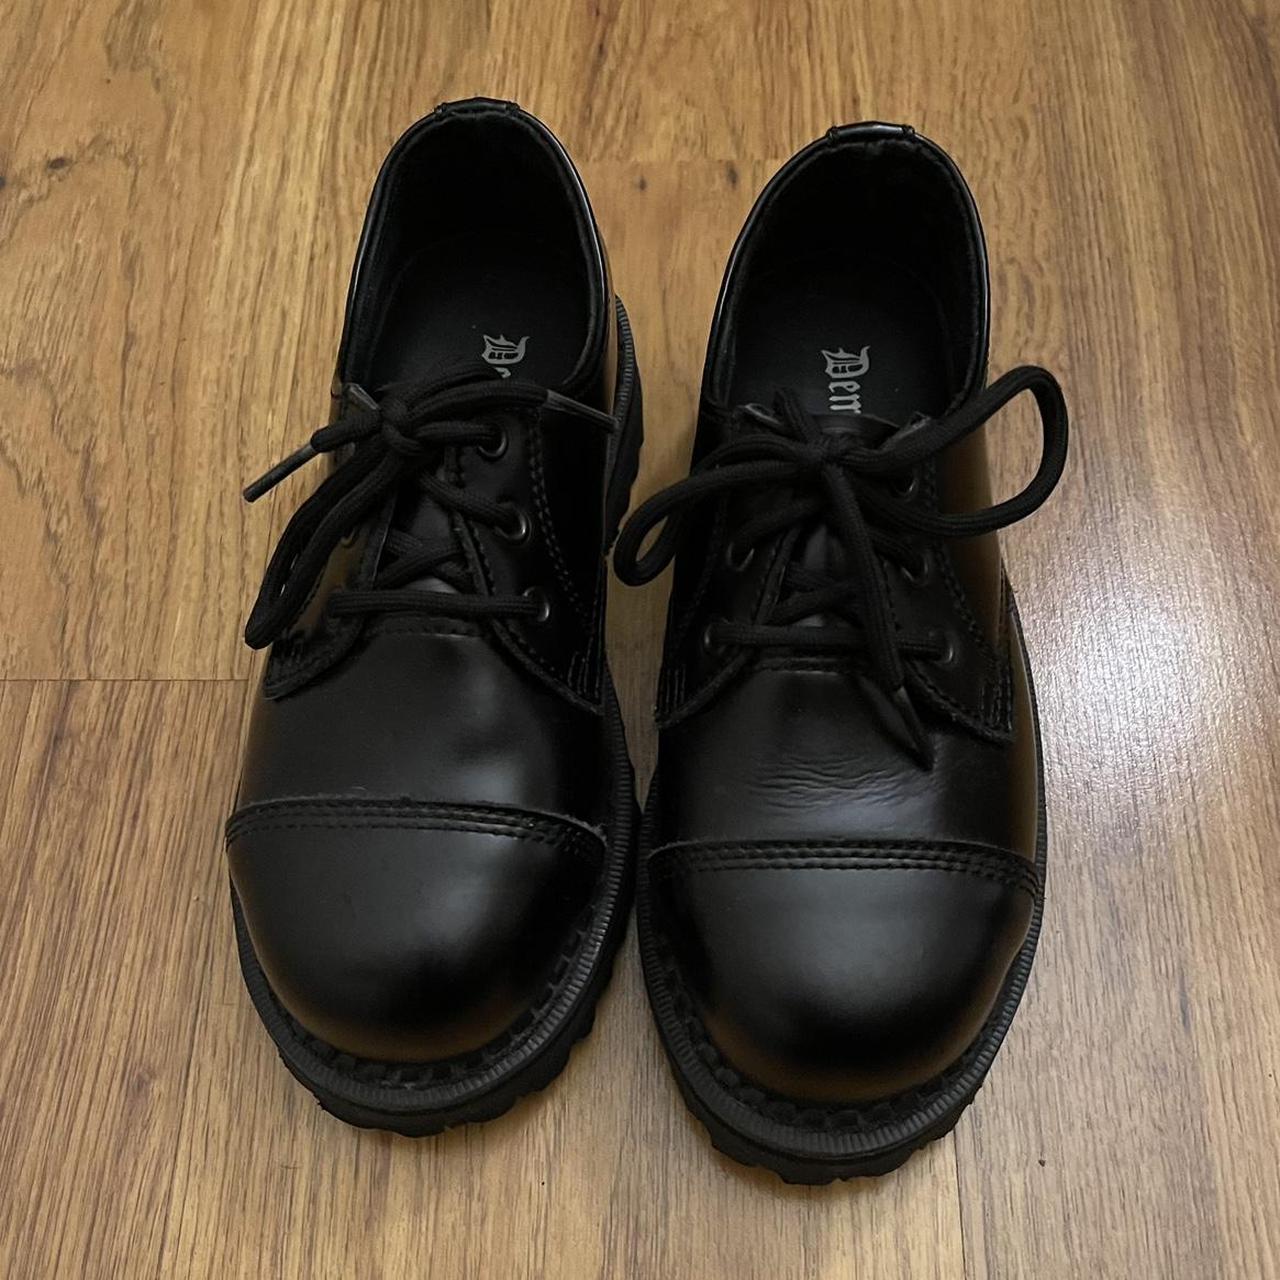 Demonia Riot 03 Shoe Super cute essential black... - Depop